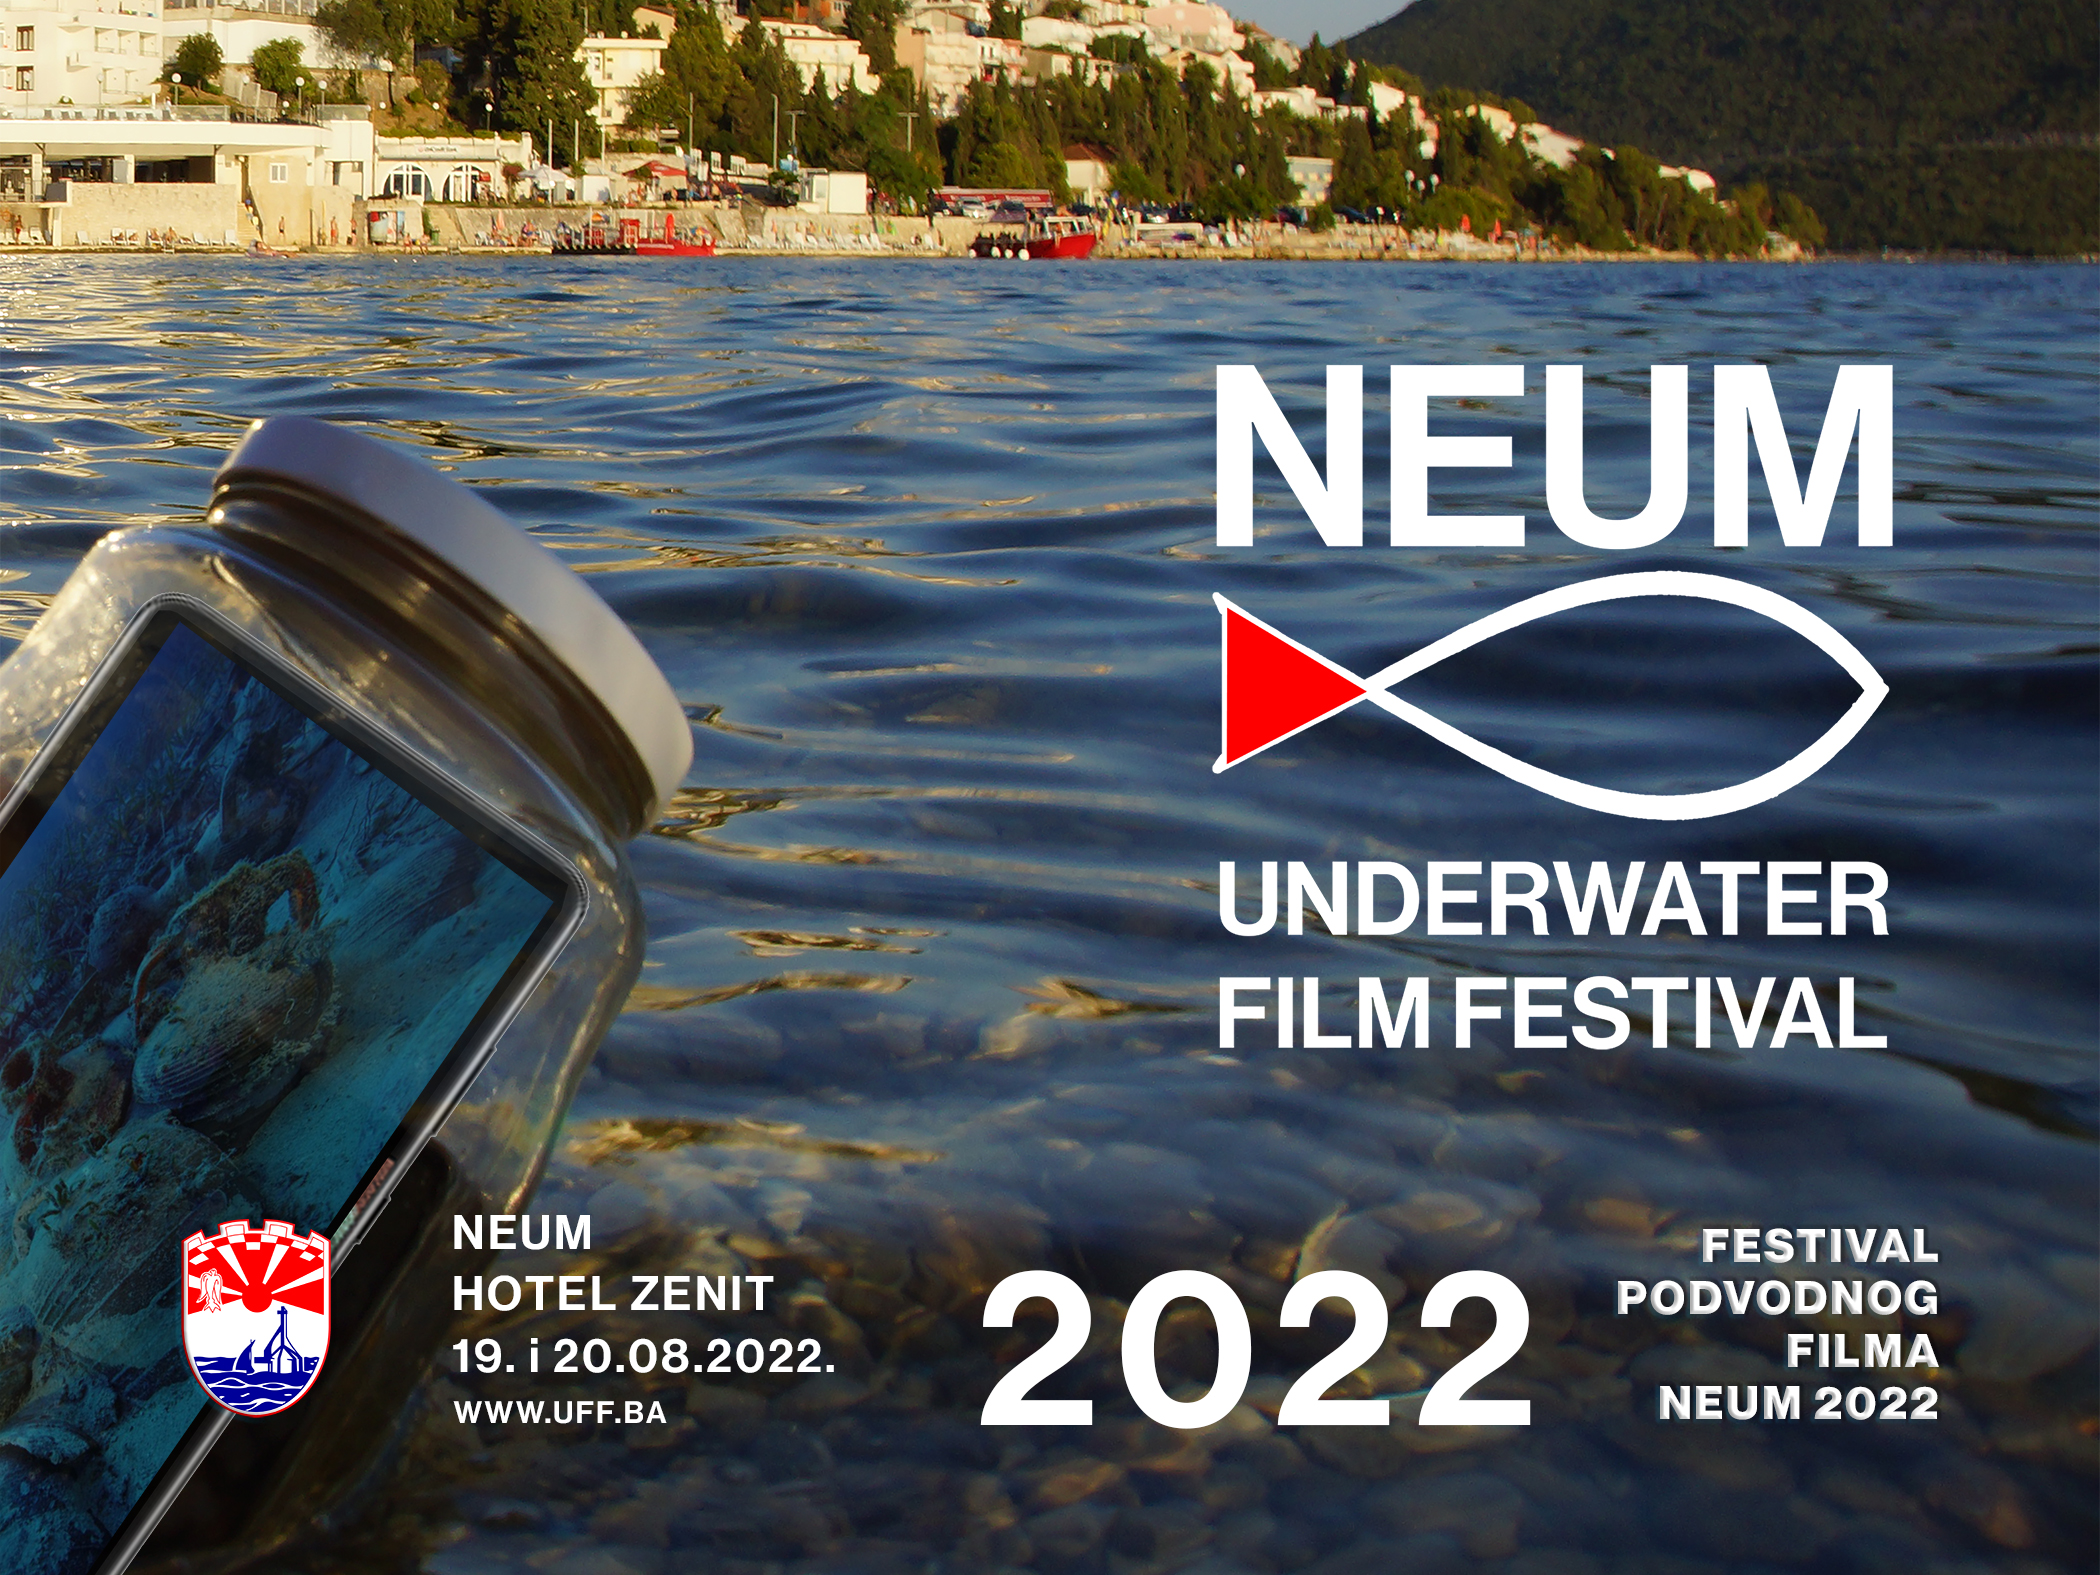 Neum underwater film festival 19. i 20 kolovoza  2022. / Međunarodni festival podvodnog filma Neum 2022.  19. i 20 kolovoza